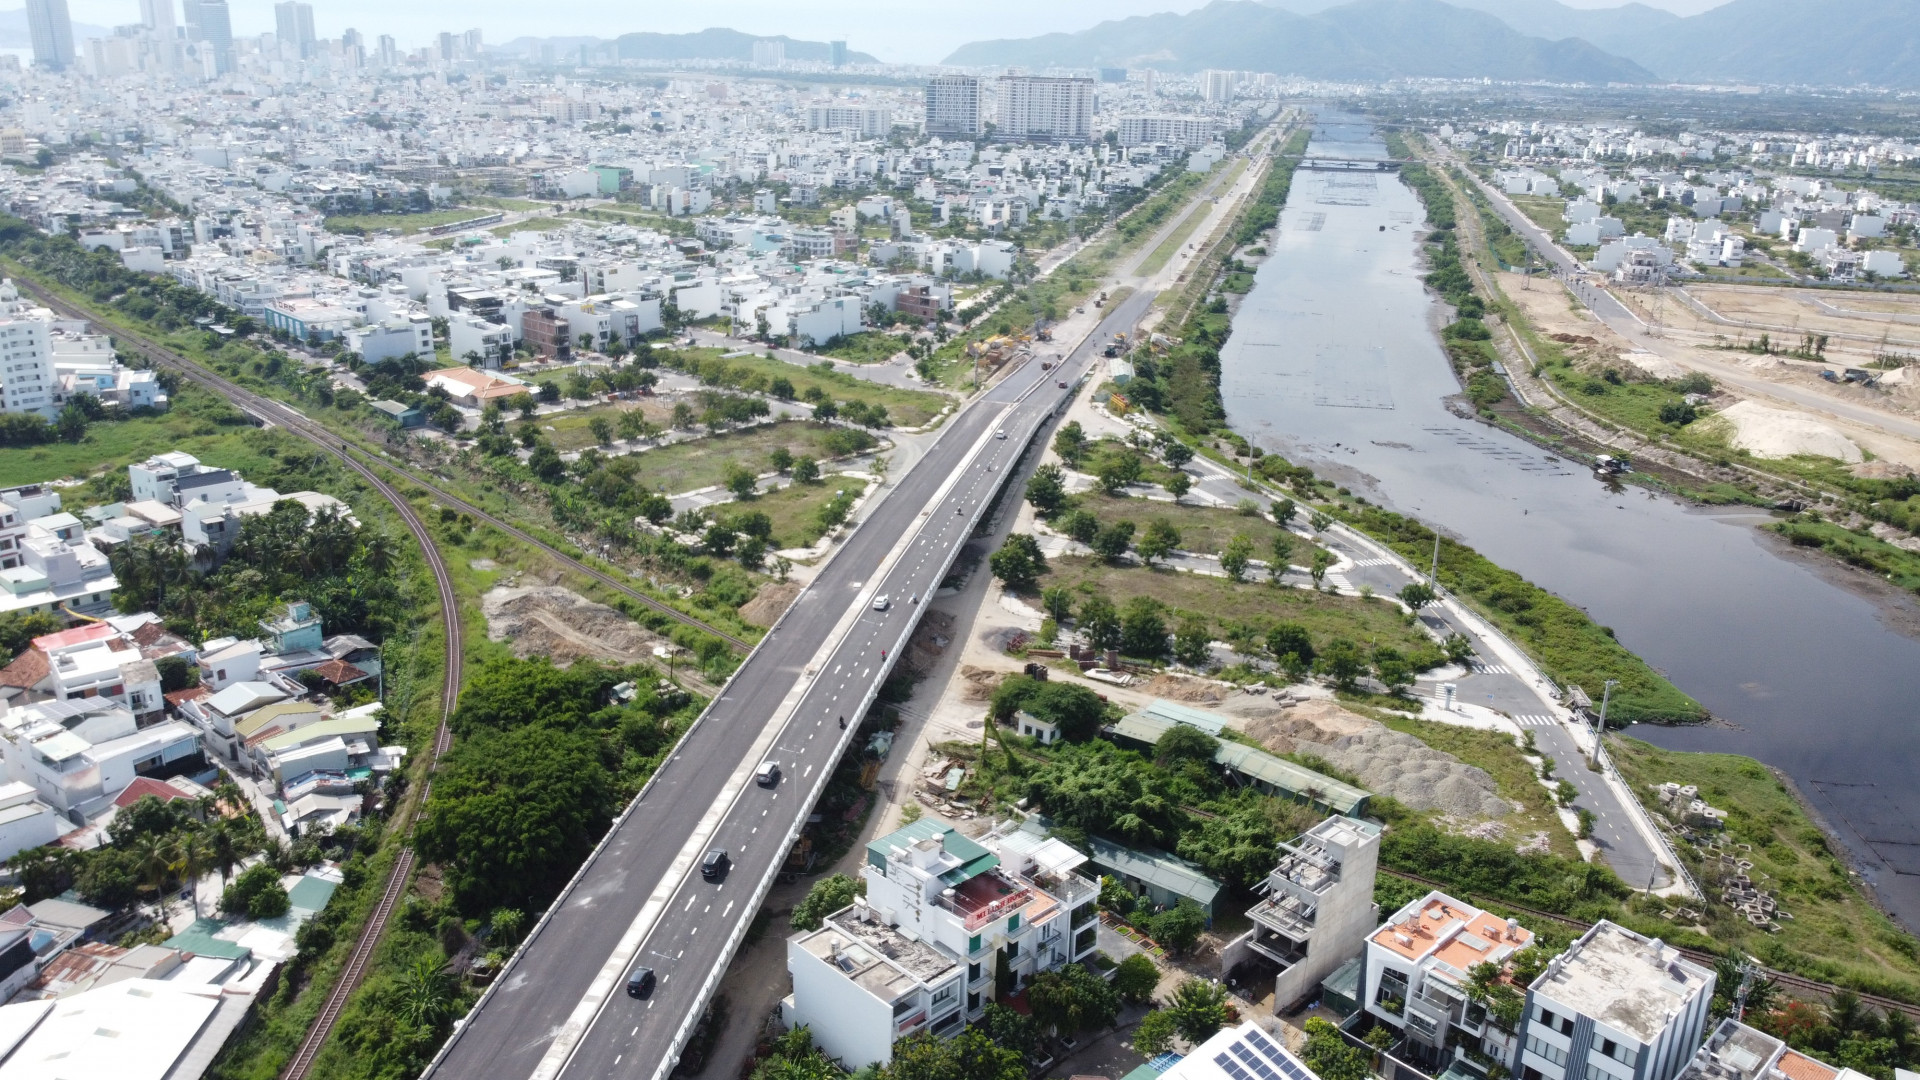 Hiện dự án đường Vành đai 2 kết nối nút giao thông Ngọc Hội  đã hoàn thiện nhánh phía Nam dài khoảng 5,8km. Nhánh phía Bắc hơn 4km đang vướng công tác giải phóng mặt bằng.  